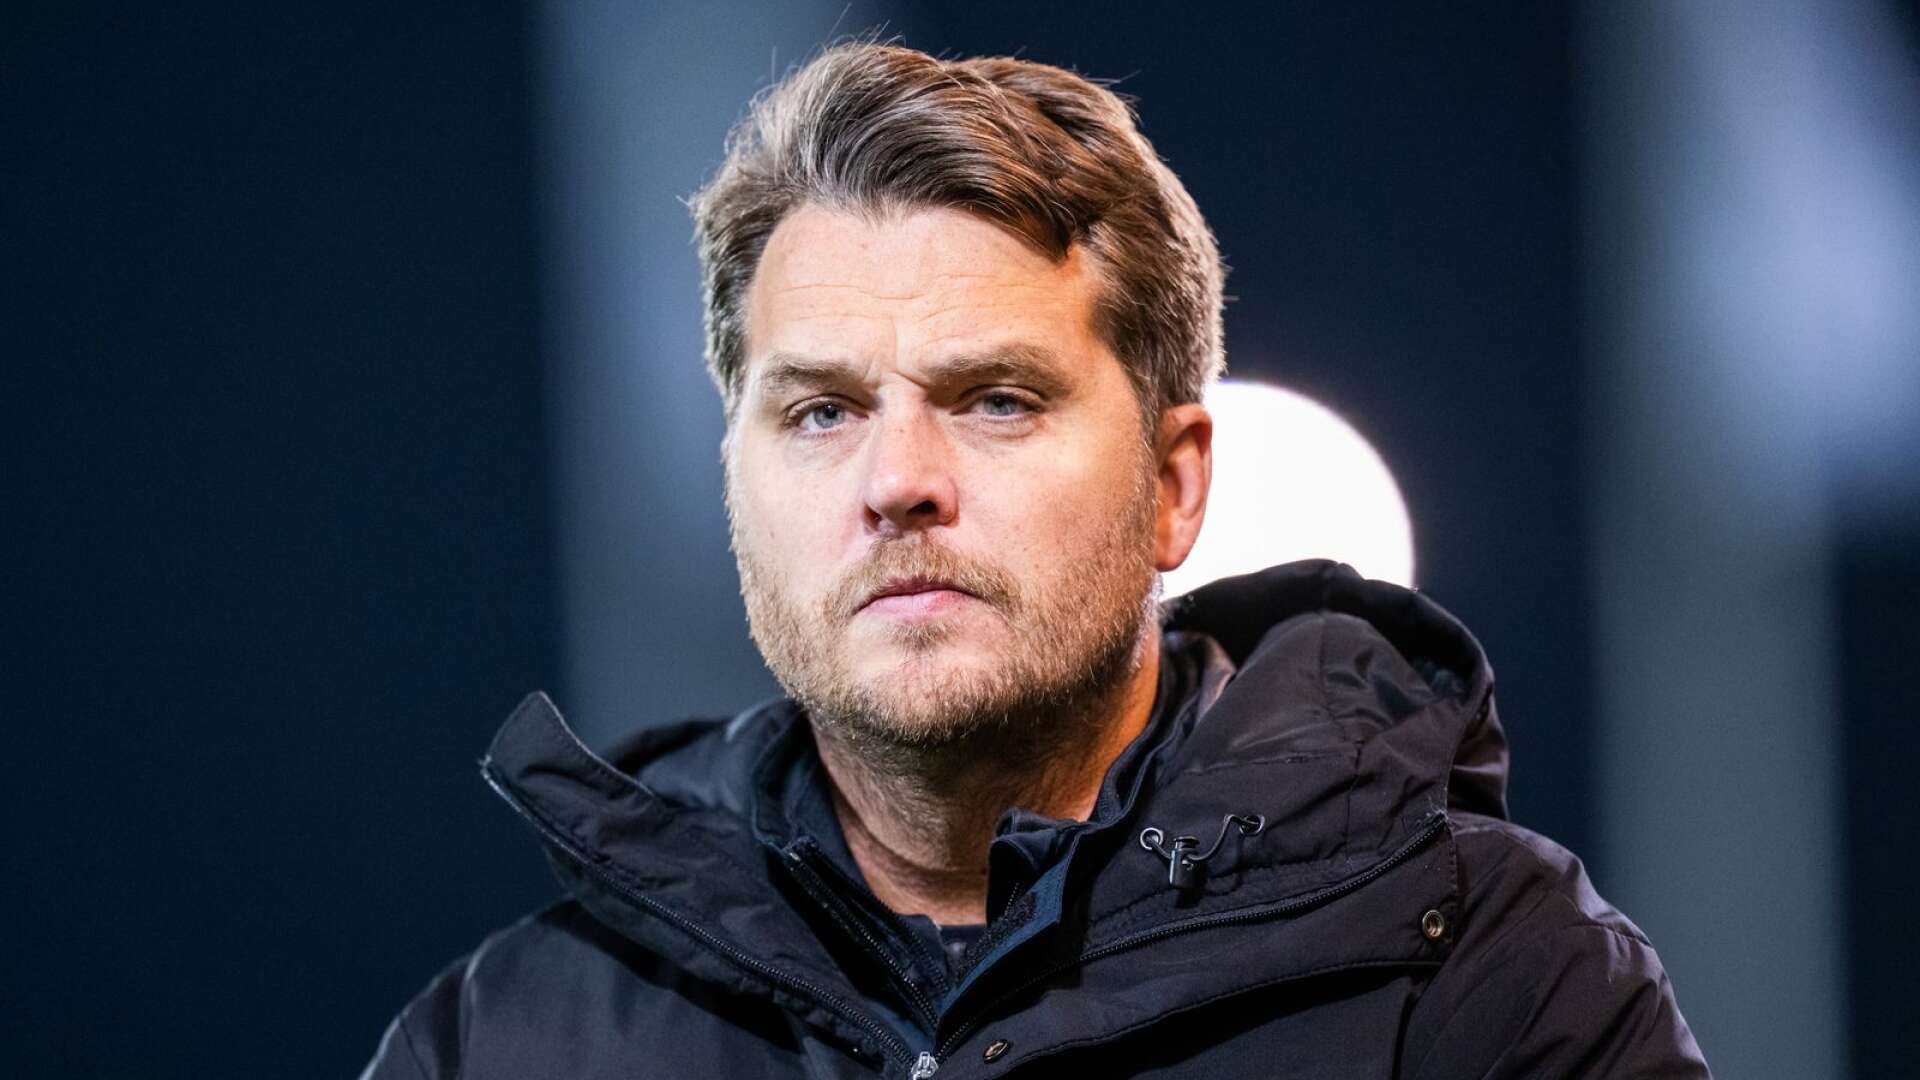 Degerfors med tränare Andreas Holmberg tog säsongens första vinst när AFC Eskilstuna besegrades i en träningsmatch på Behrn Arena.